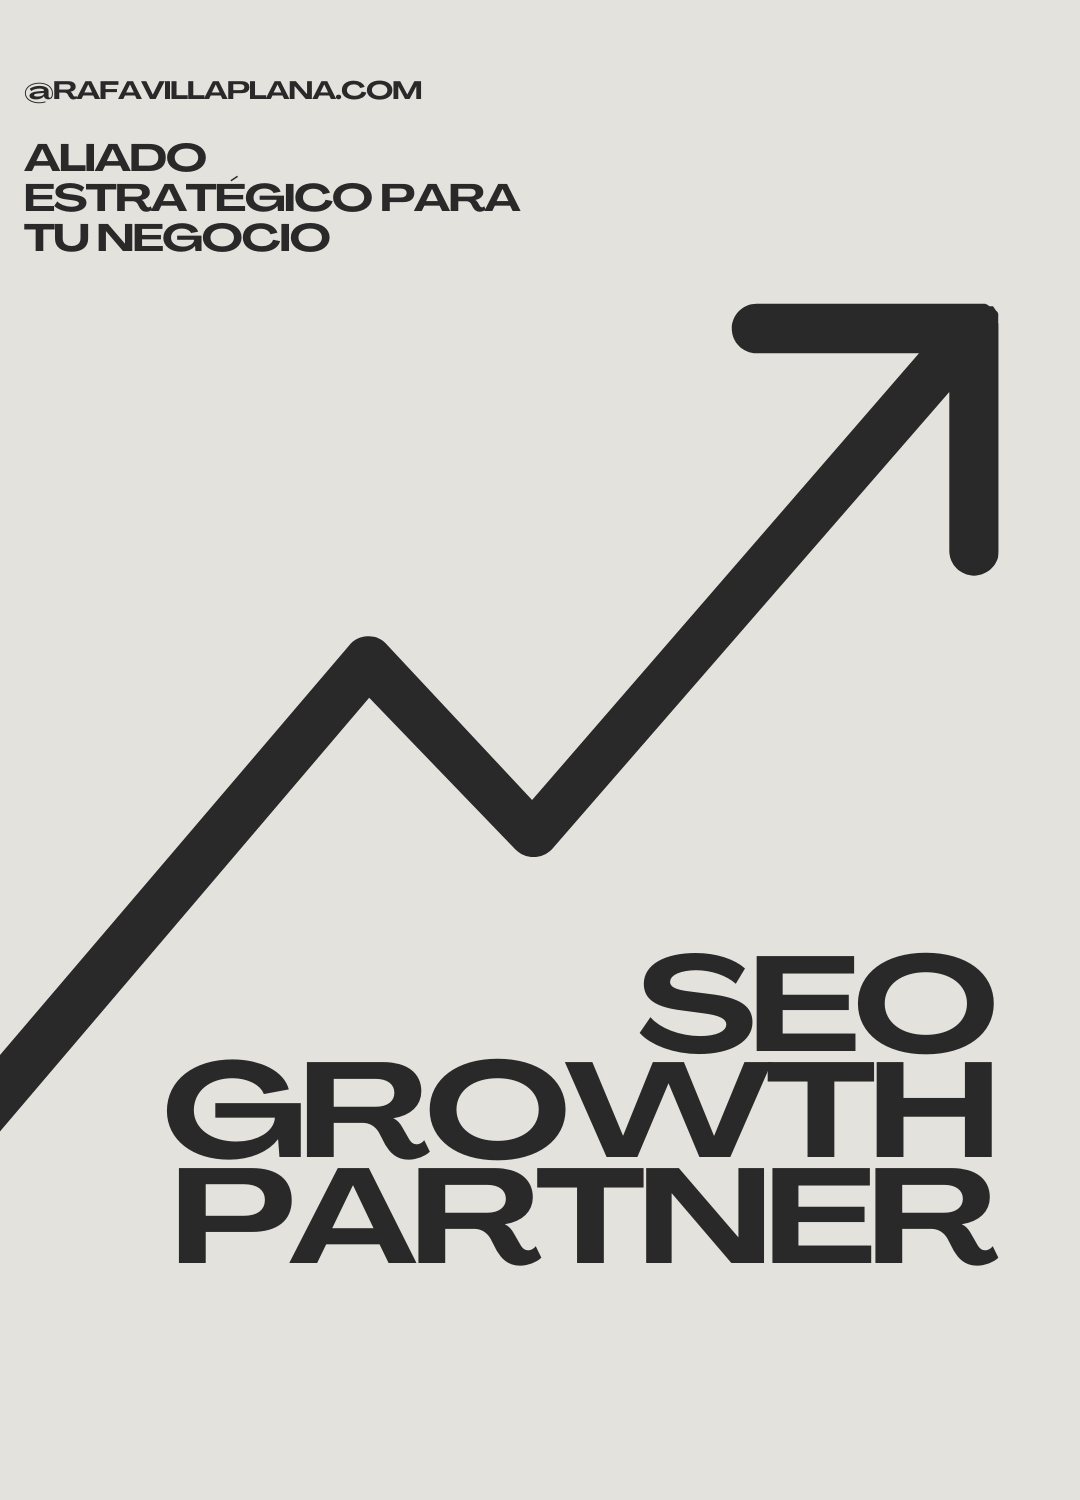 SEO Growth Partner